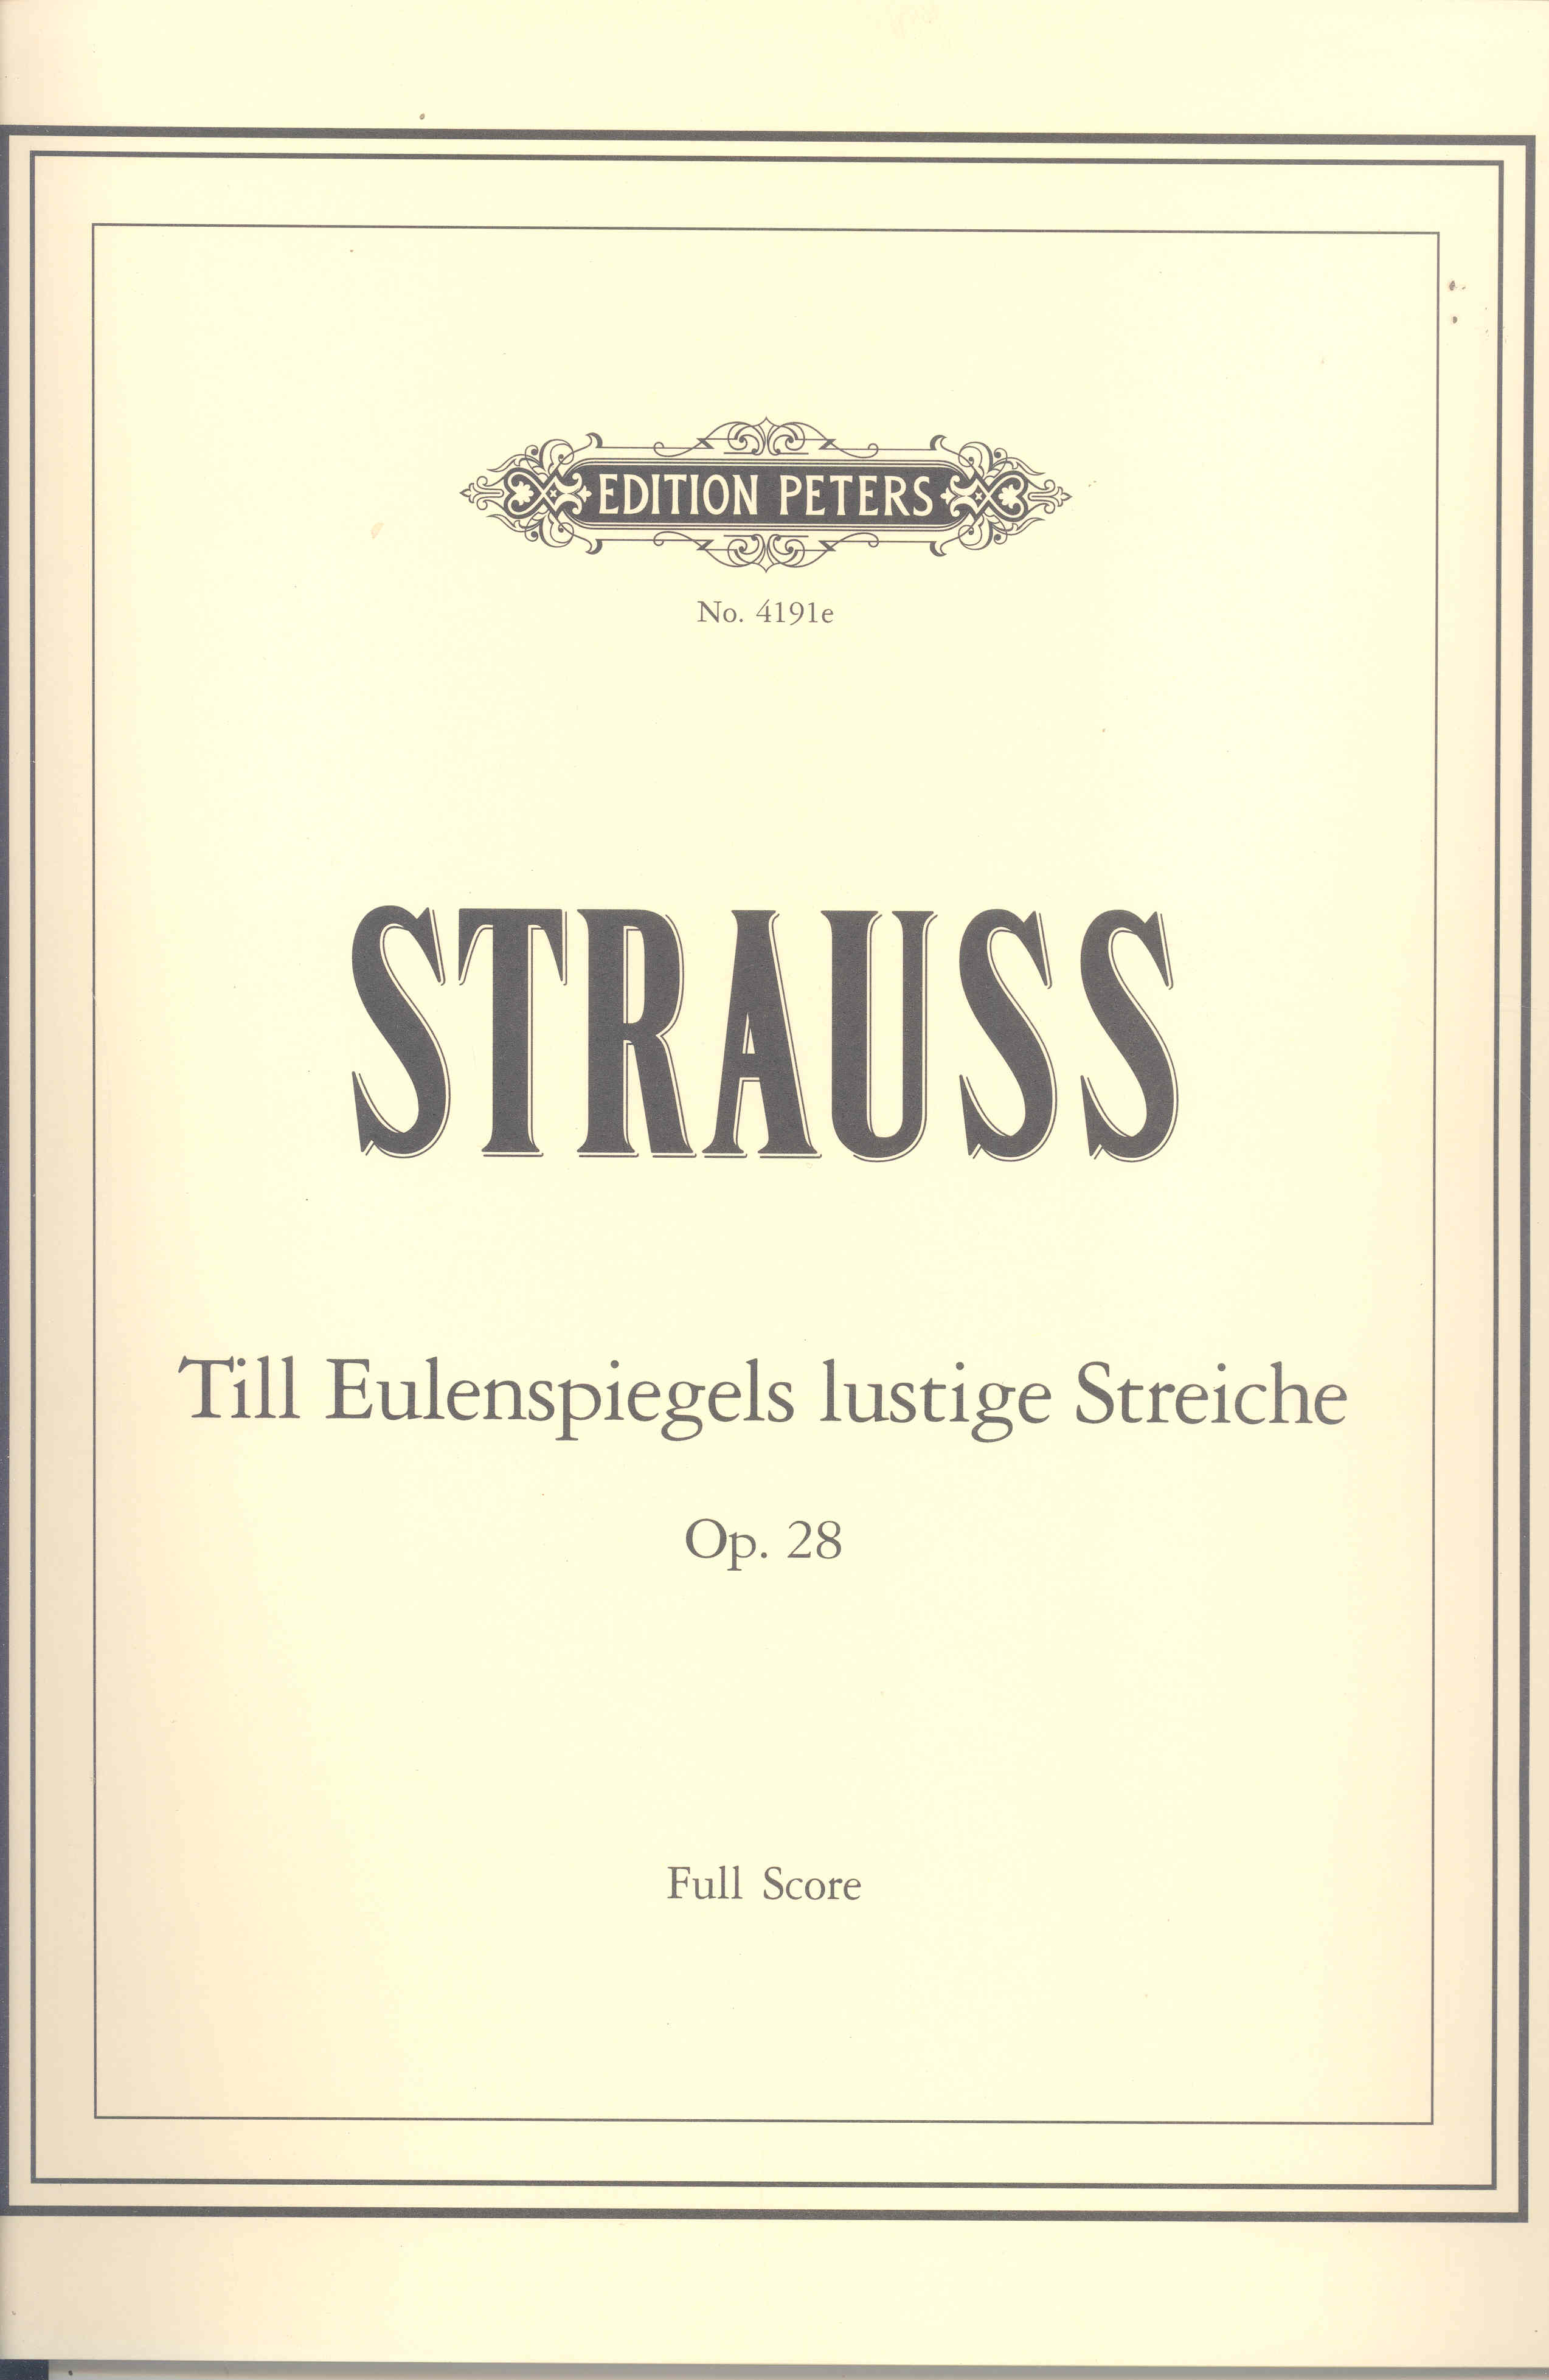 Strauss Till Eulenspiegels Full Score Sheet Music Songbook